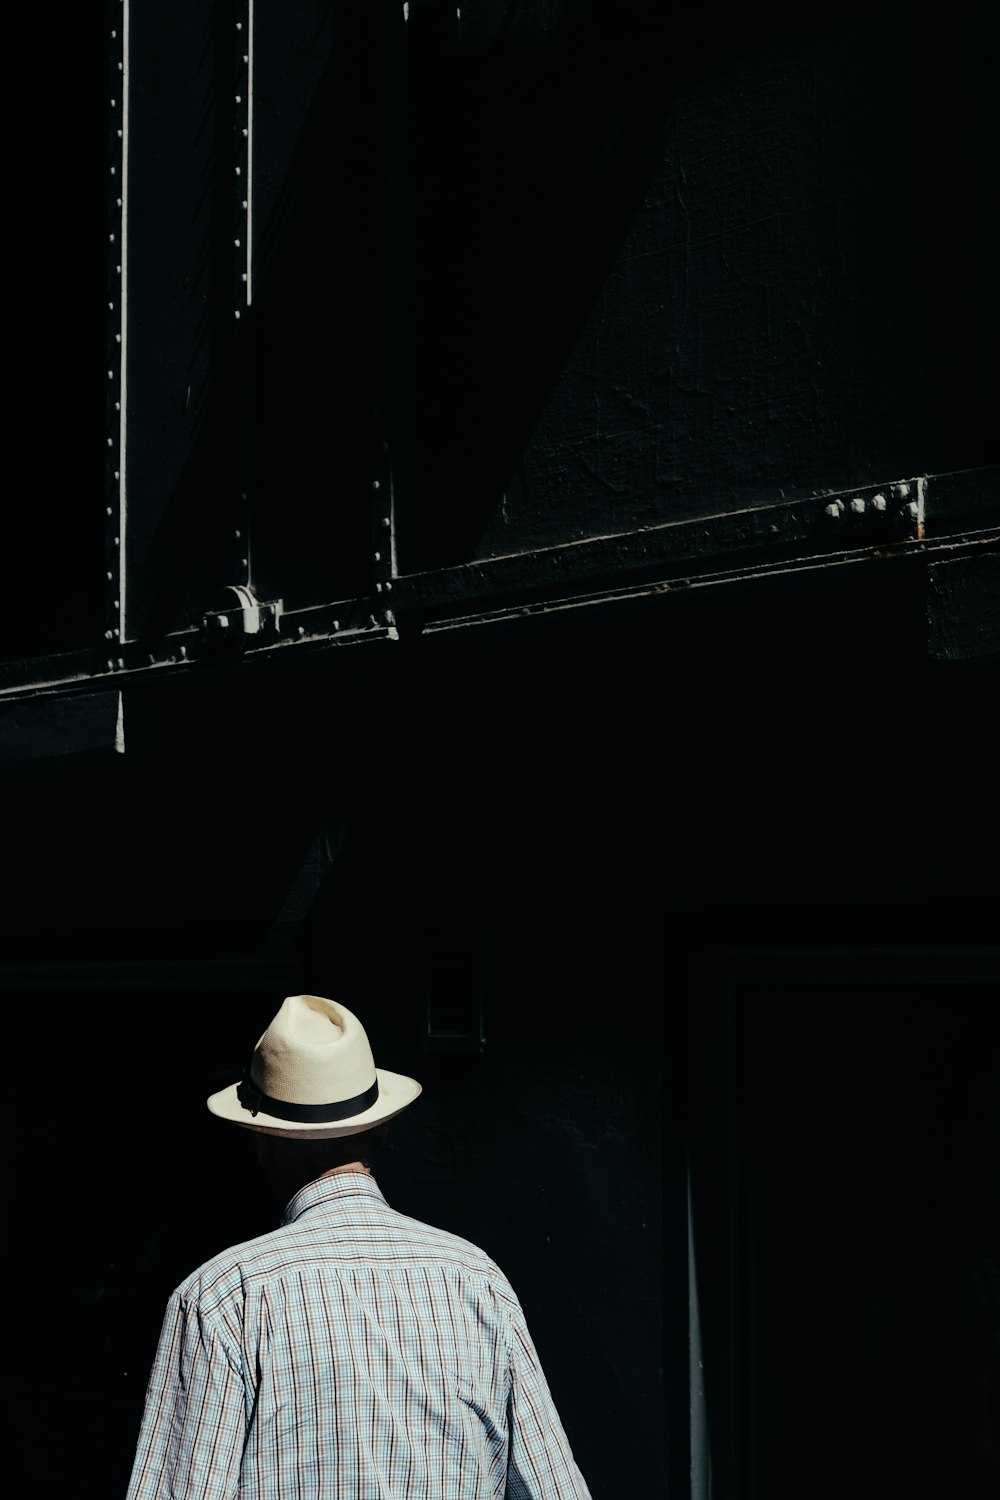 man wearing white hat